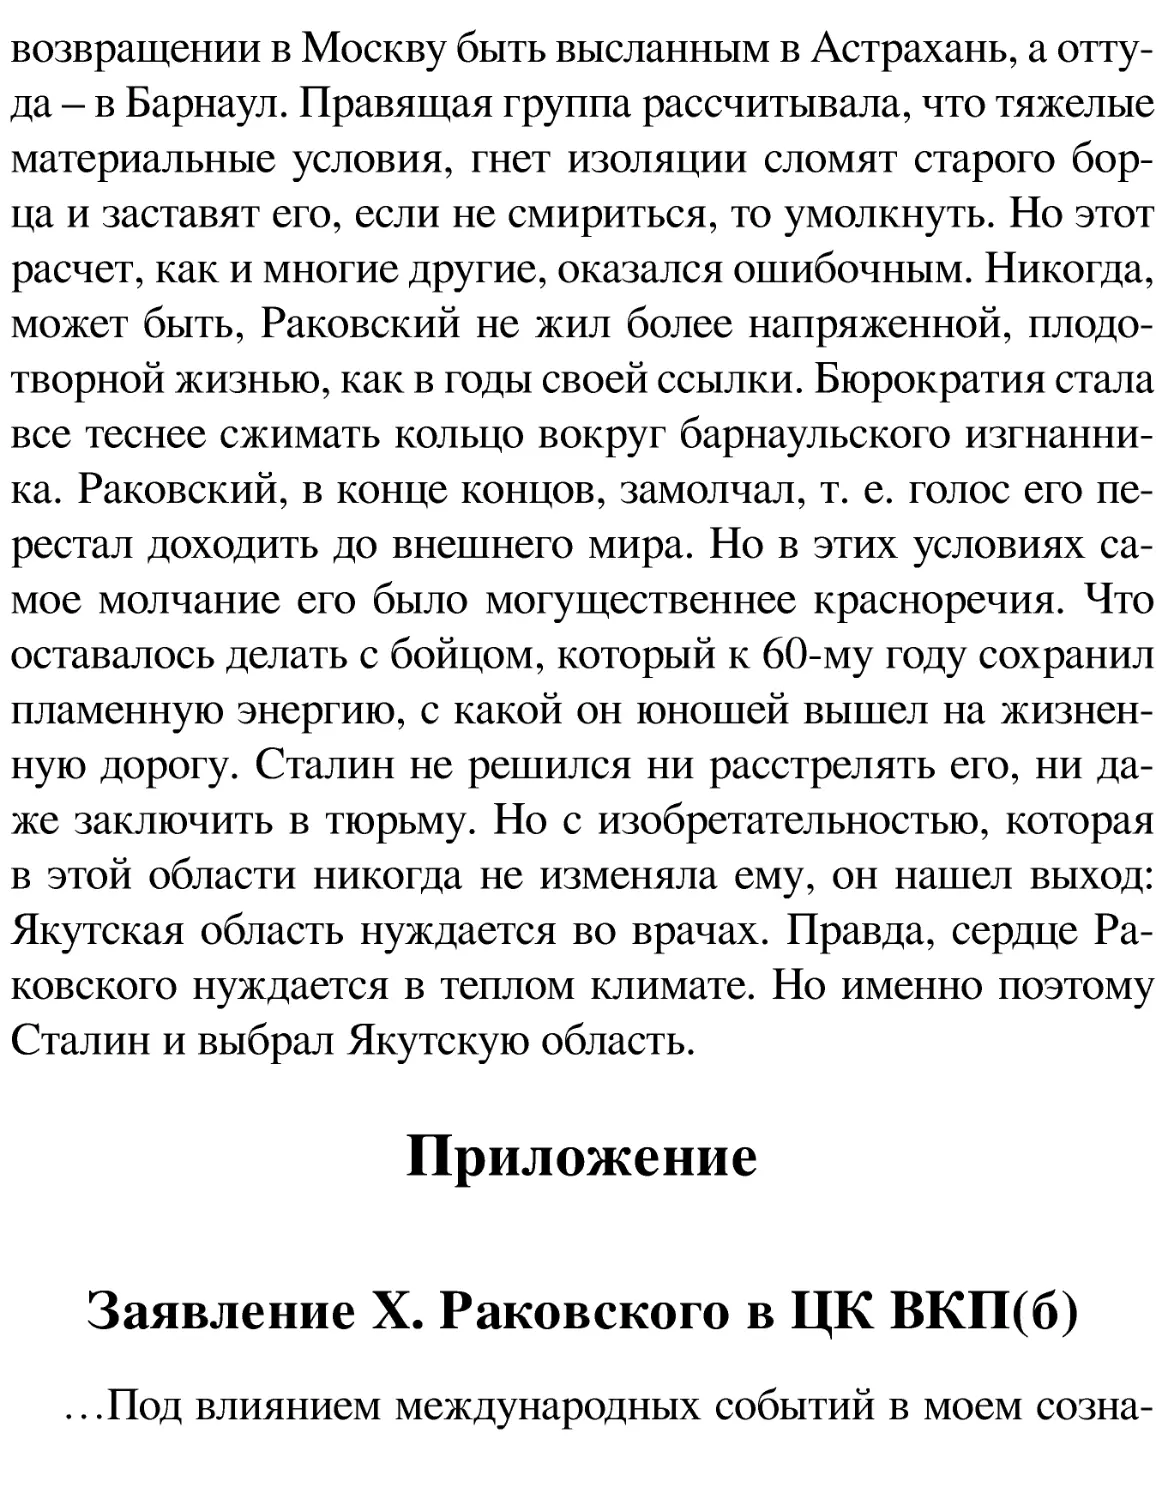 Приложение
Заявление X. Раковского в ЦК ВКП(б)